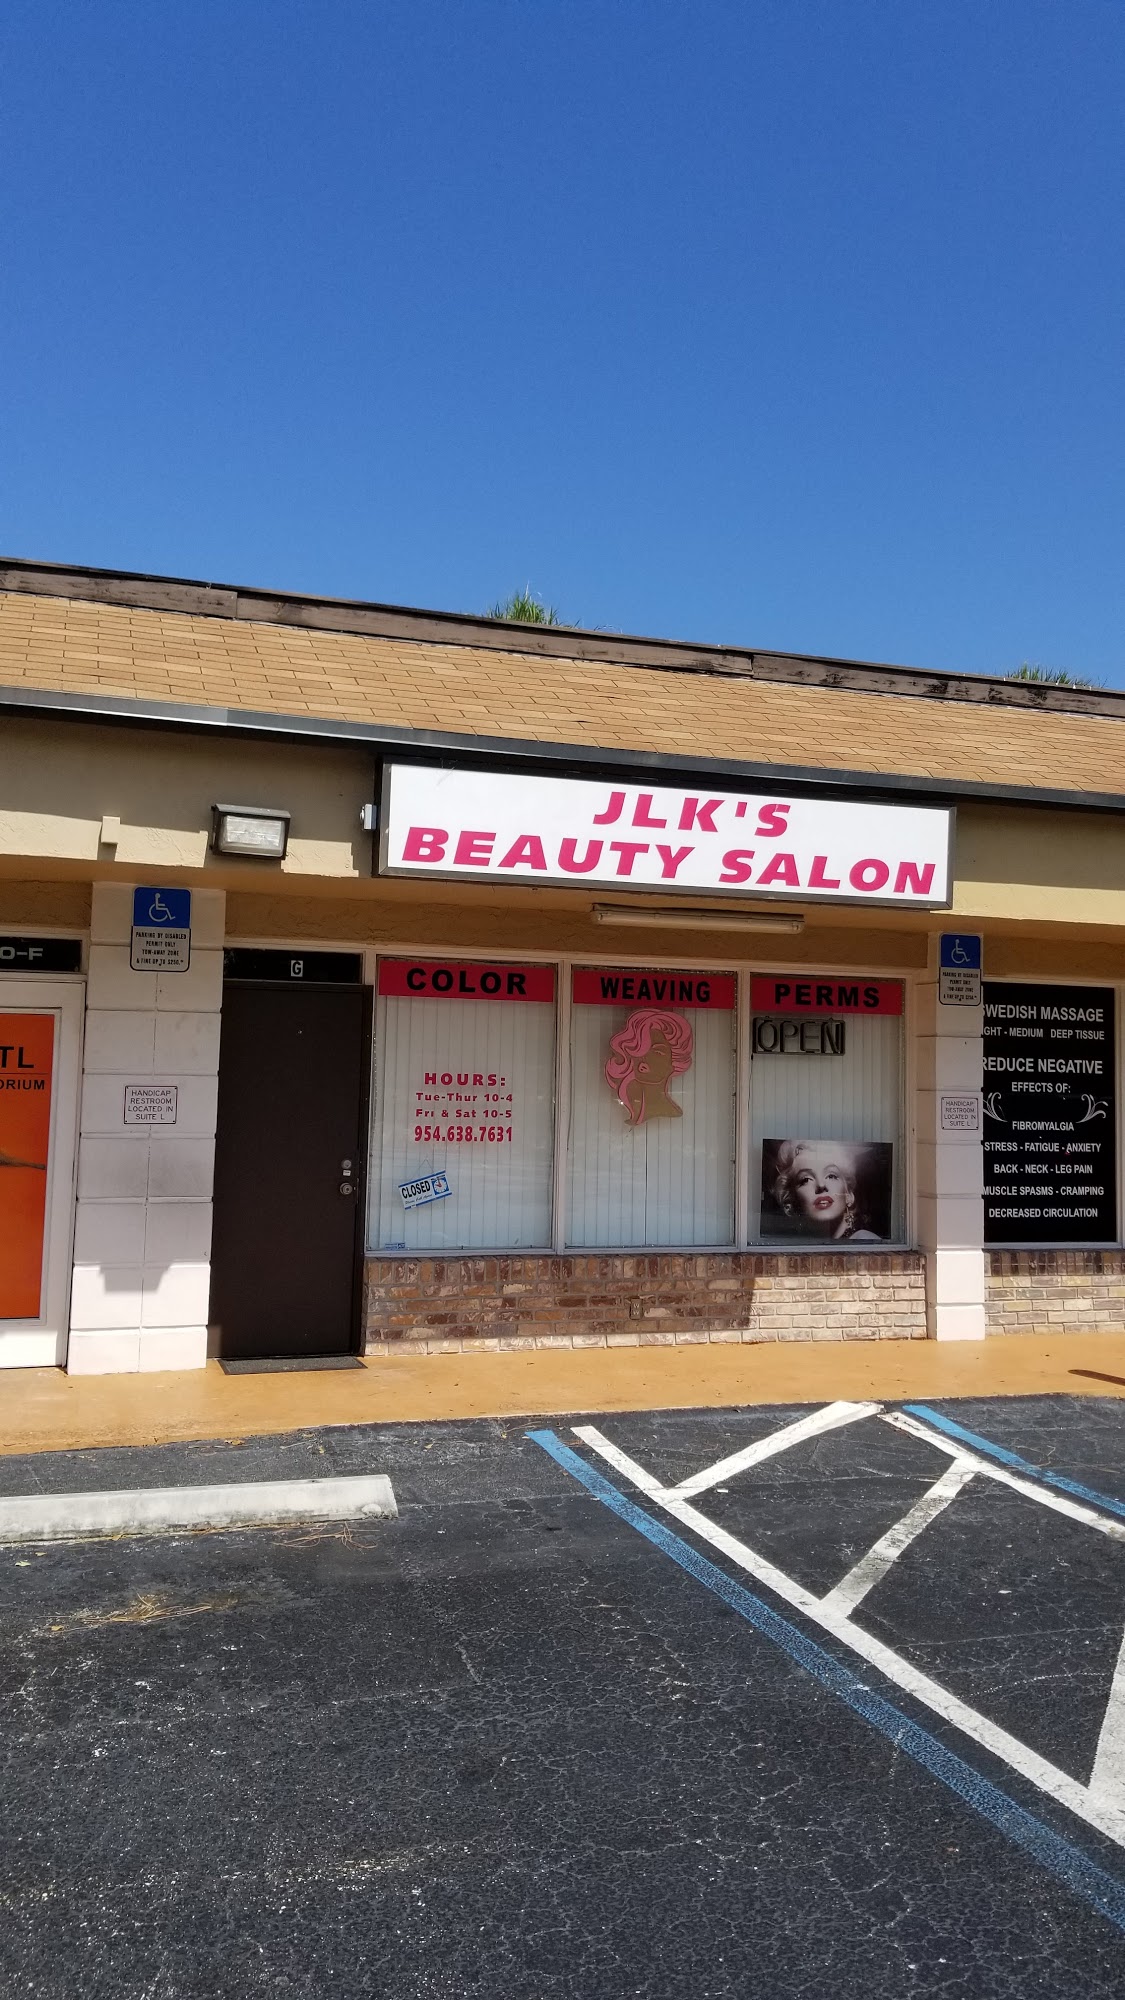 JLK'S Beauty Salon